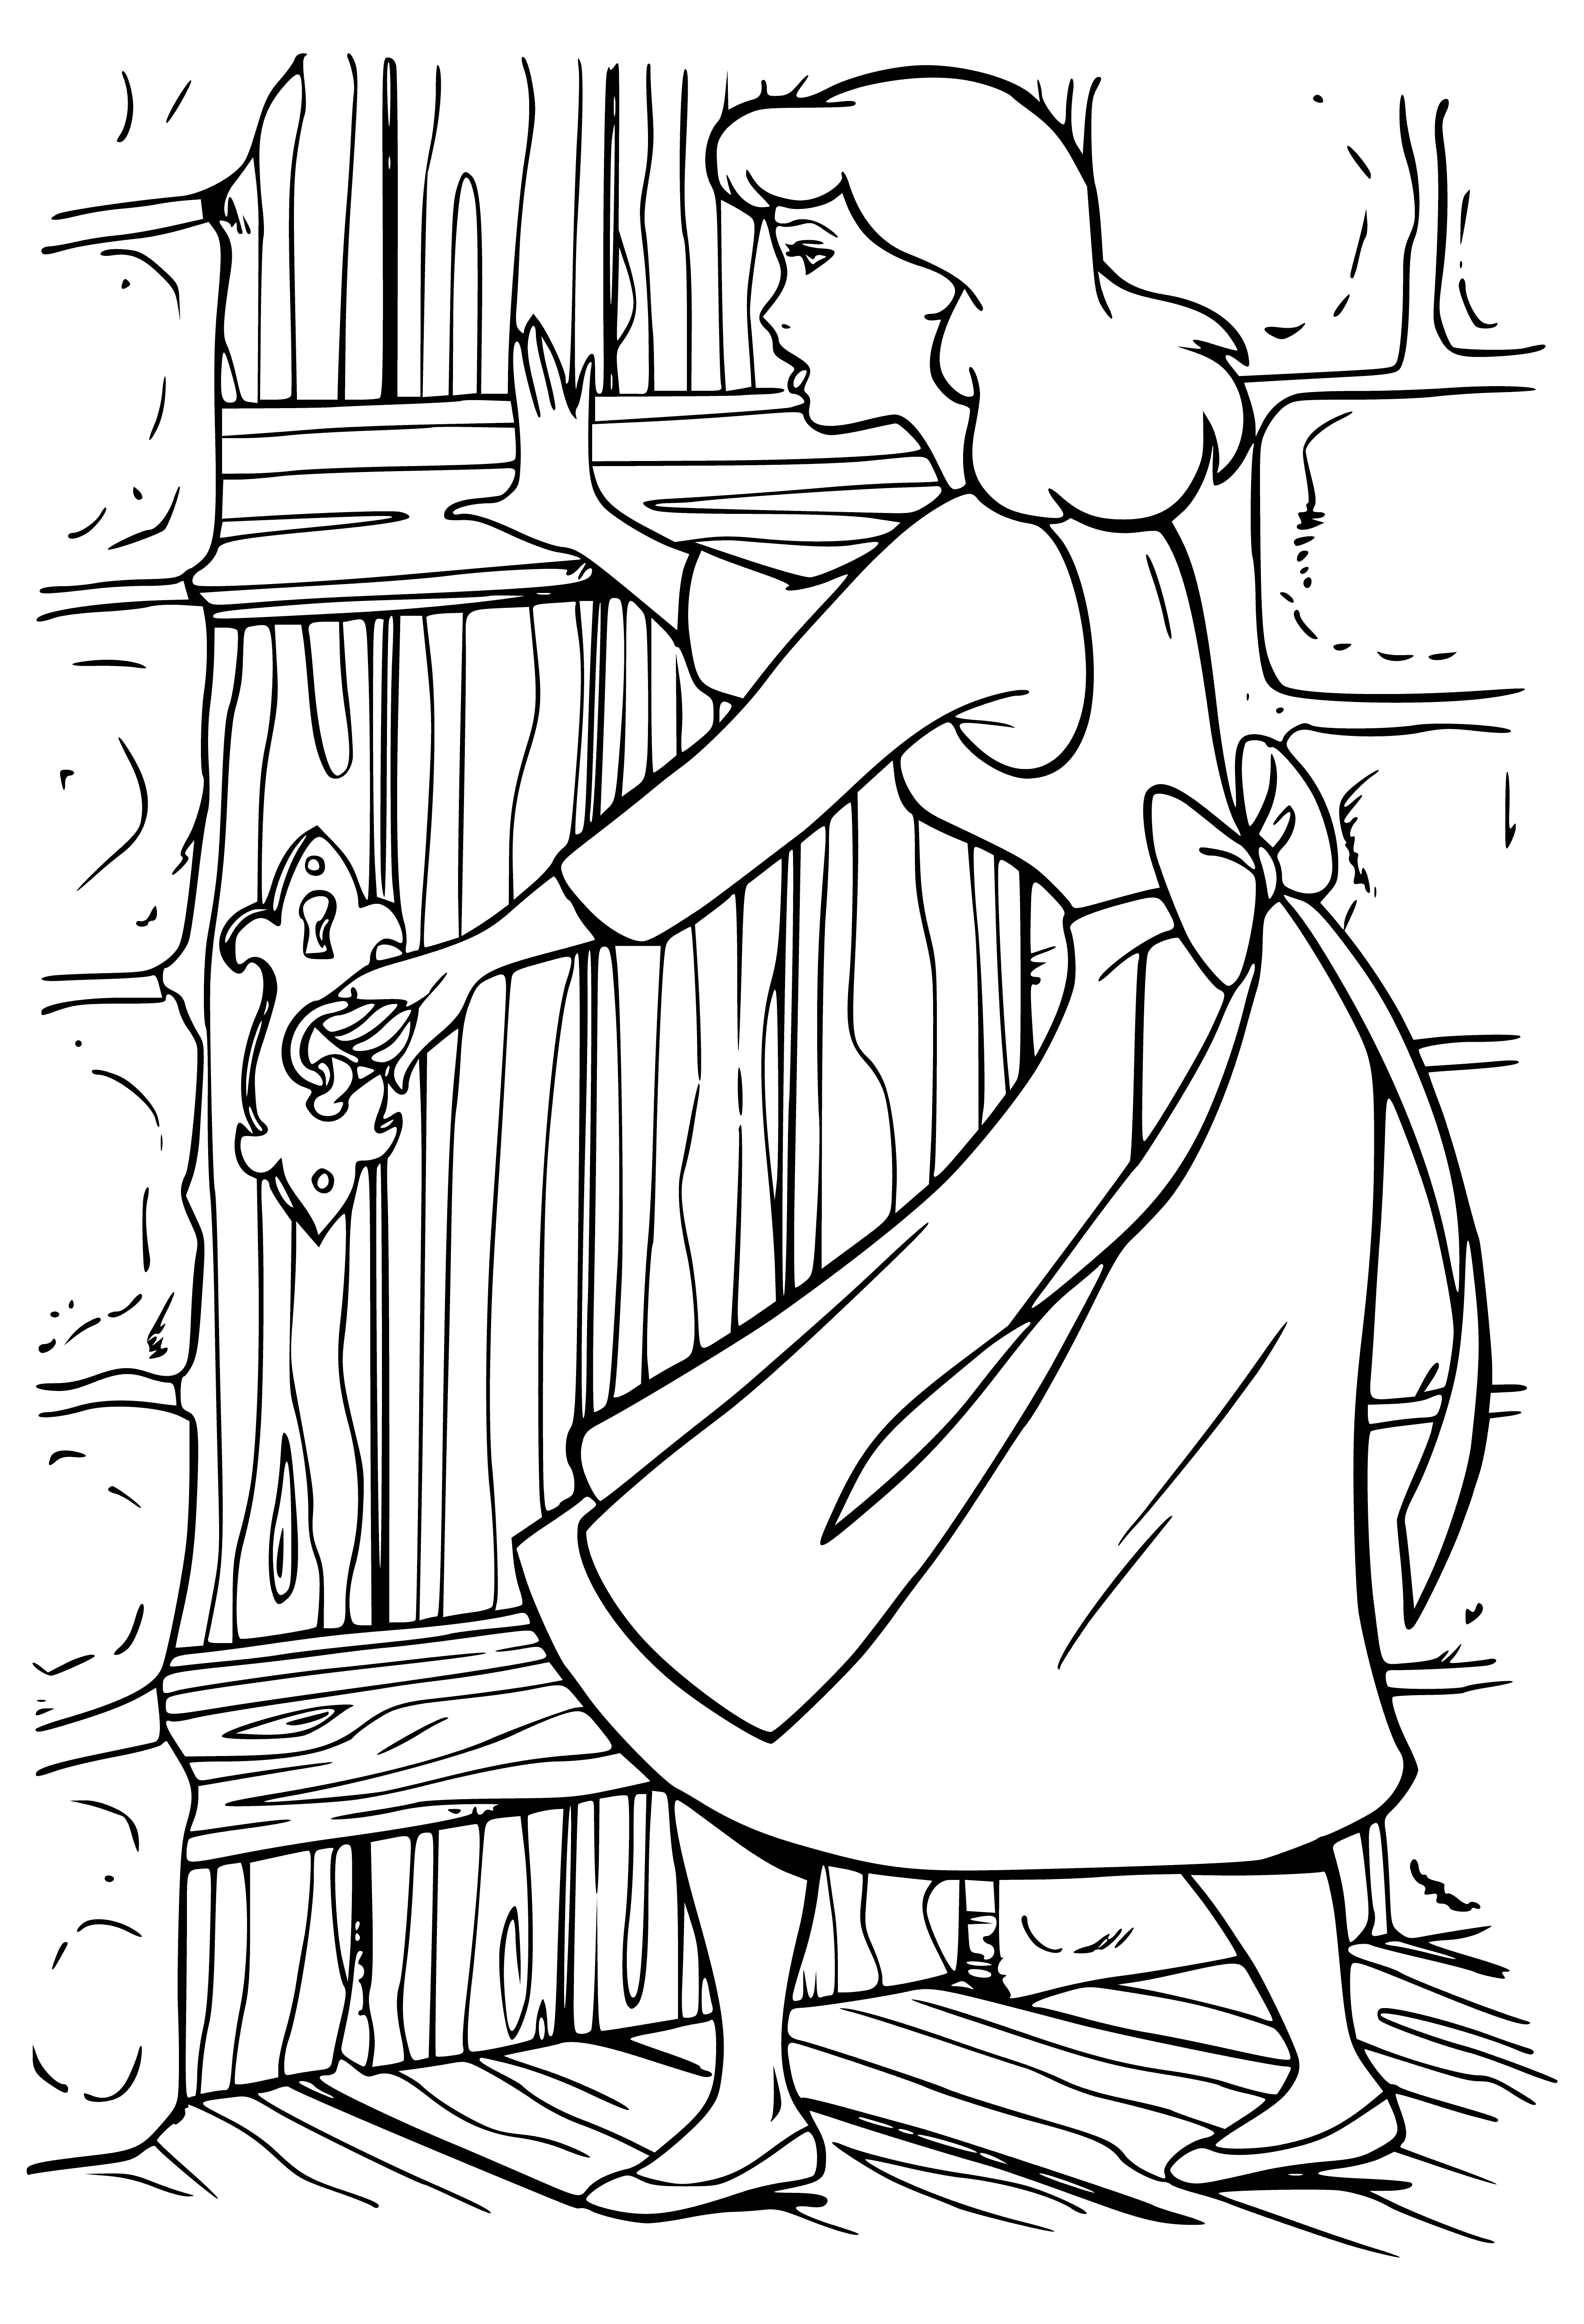 Cinderella locked up coloring page